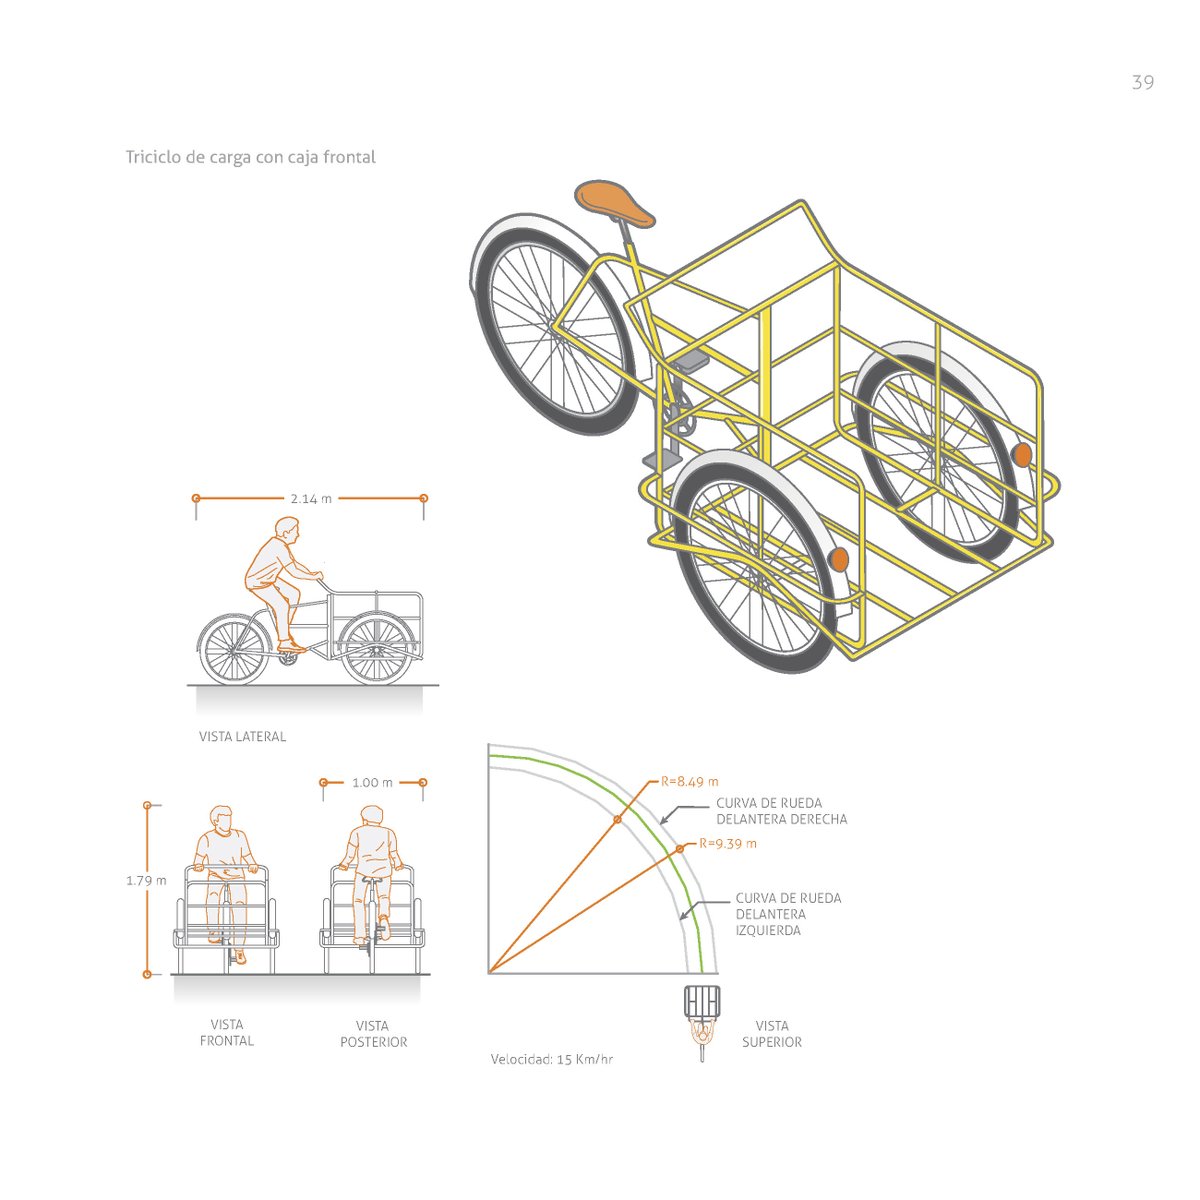 TRICICLOS EN MANUALES DE MOVILIDADLos triciclos son un vehículo propio de nuestras ciudades y la infraestructura debe considerarlos. En el IV Tomo del Manual de  @ciclociudades de  @ITDPmx aparece esta ilustración que ayuda a planear entornos triciamigables.